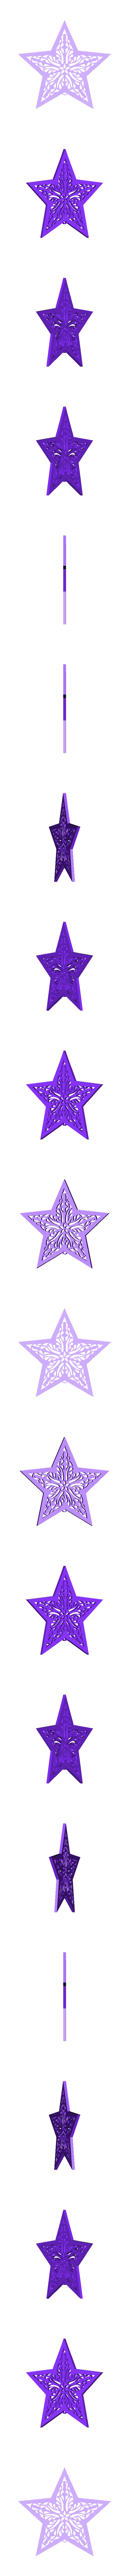 Christmas Tree Star.stl Télécharger fichier STL Décoration de l'arbre de Noël en forme d'étoile • Objet à imprimer en 3D, Printerboy